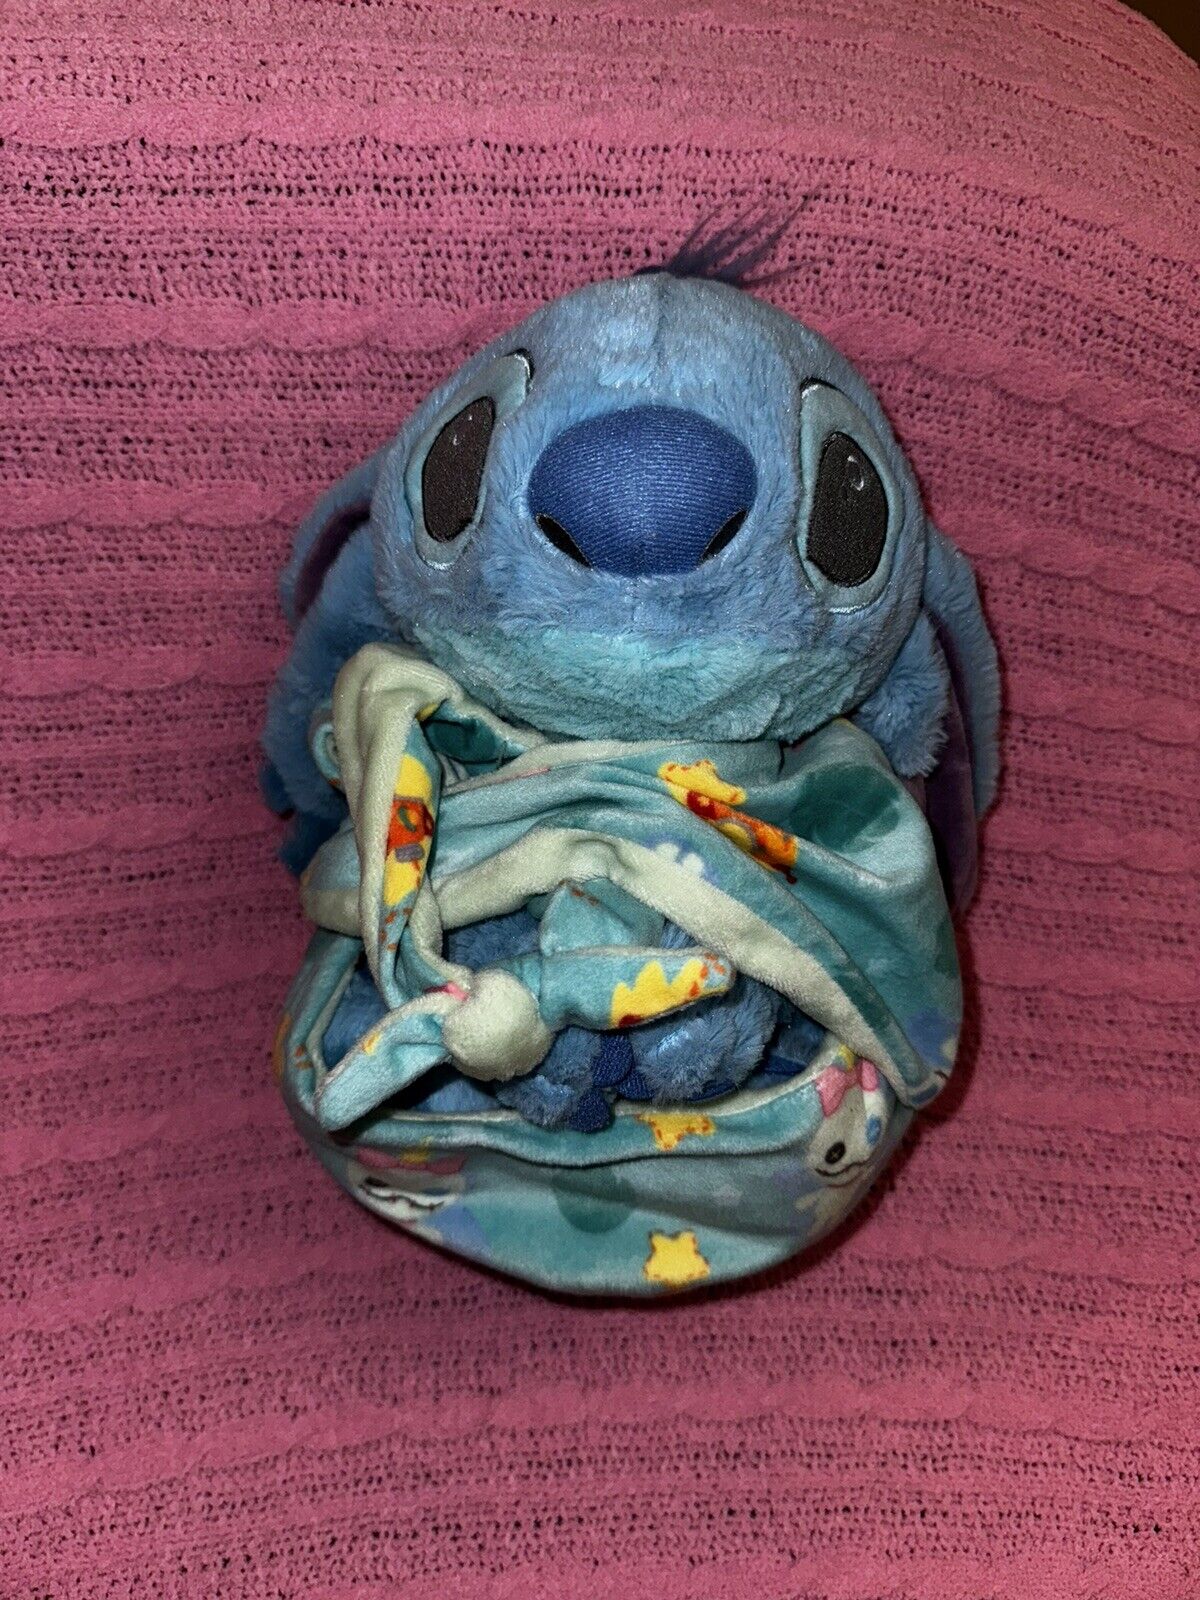 Disney Babies STITCH Lilo & Stitch Baby Plush Blanket Pouch Swaddle Stuffed